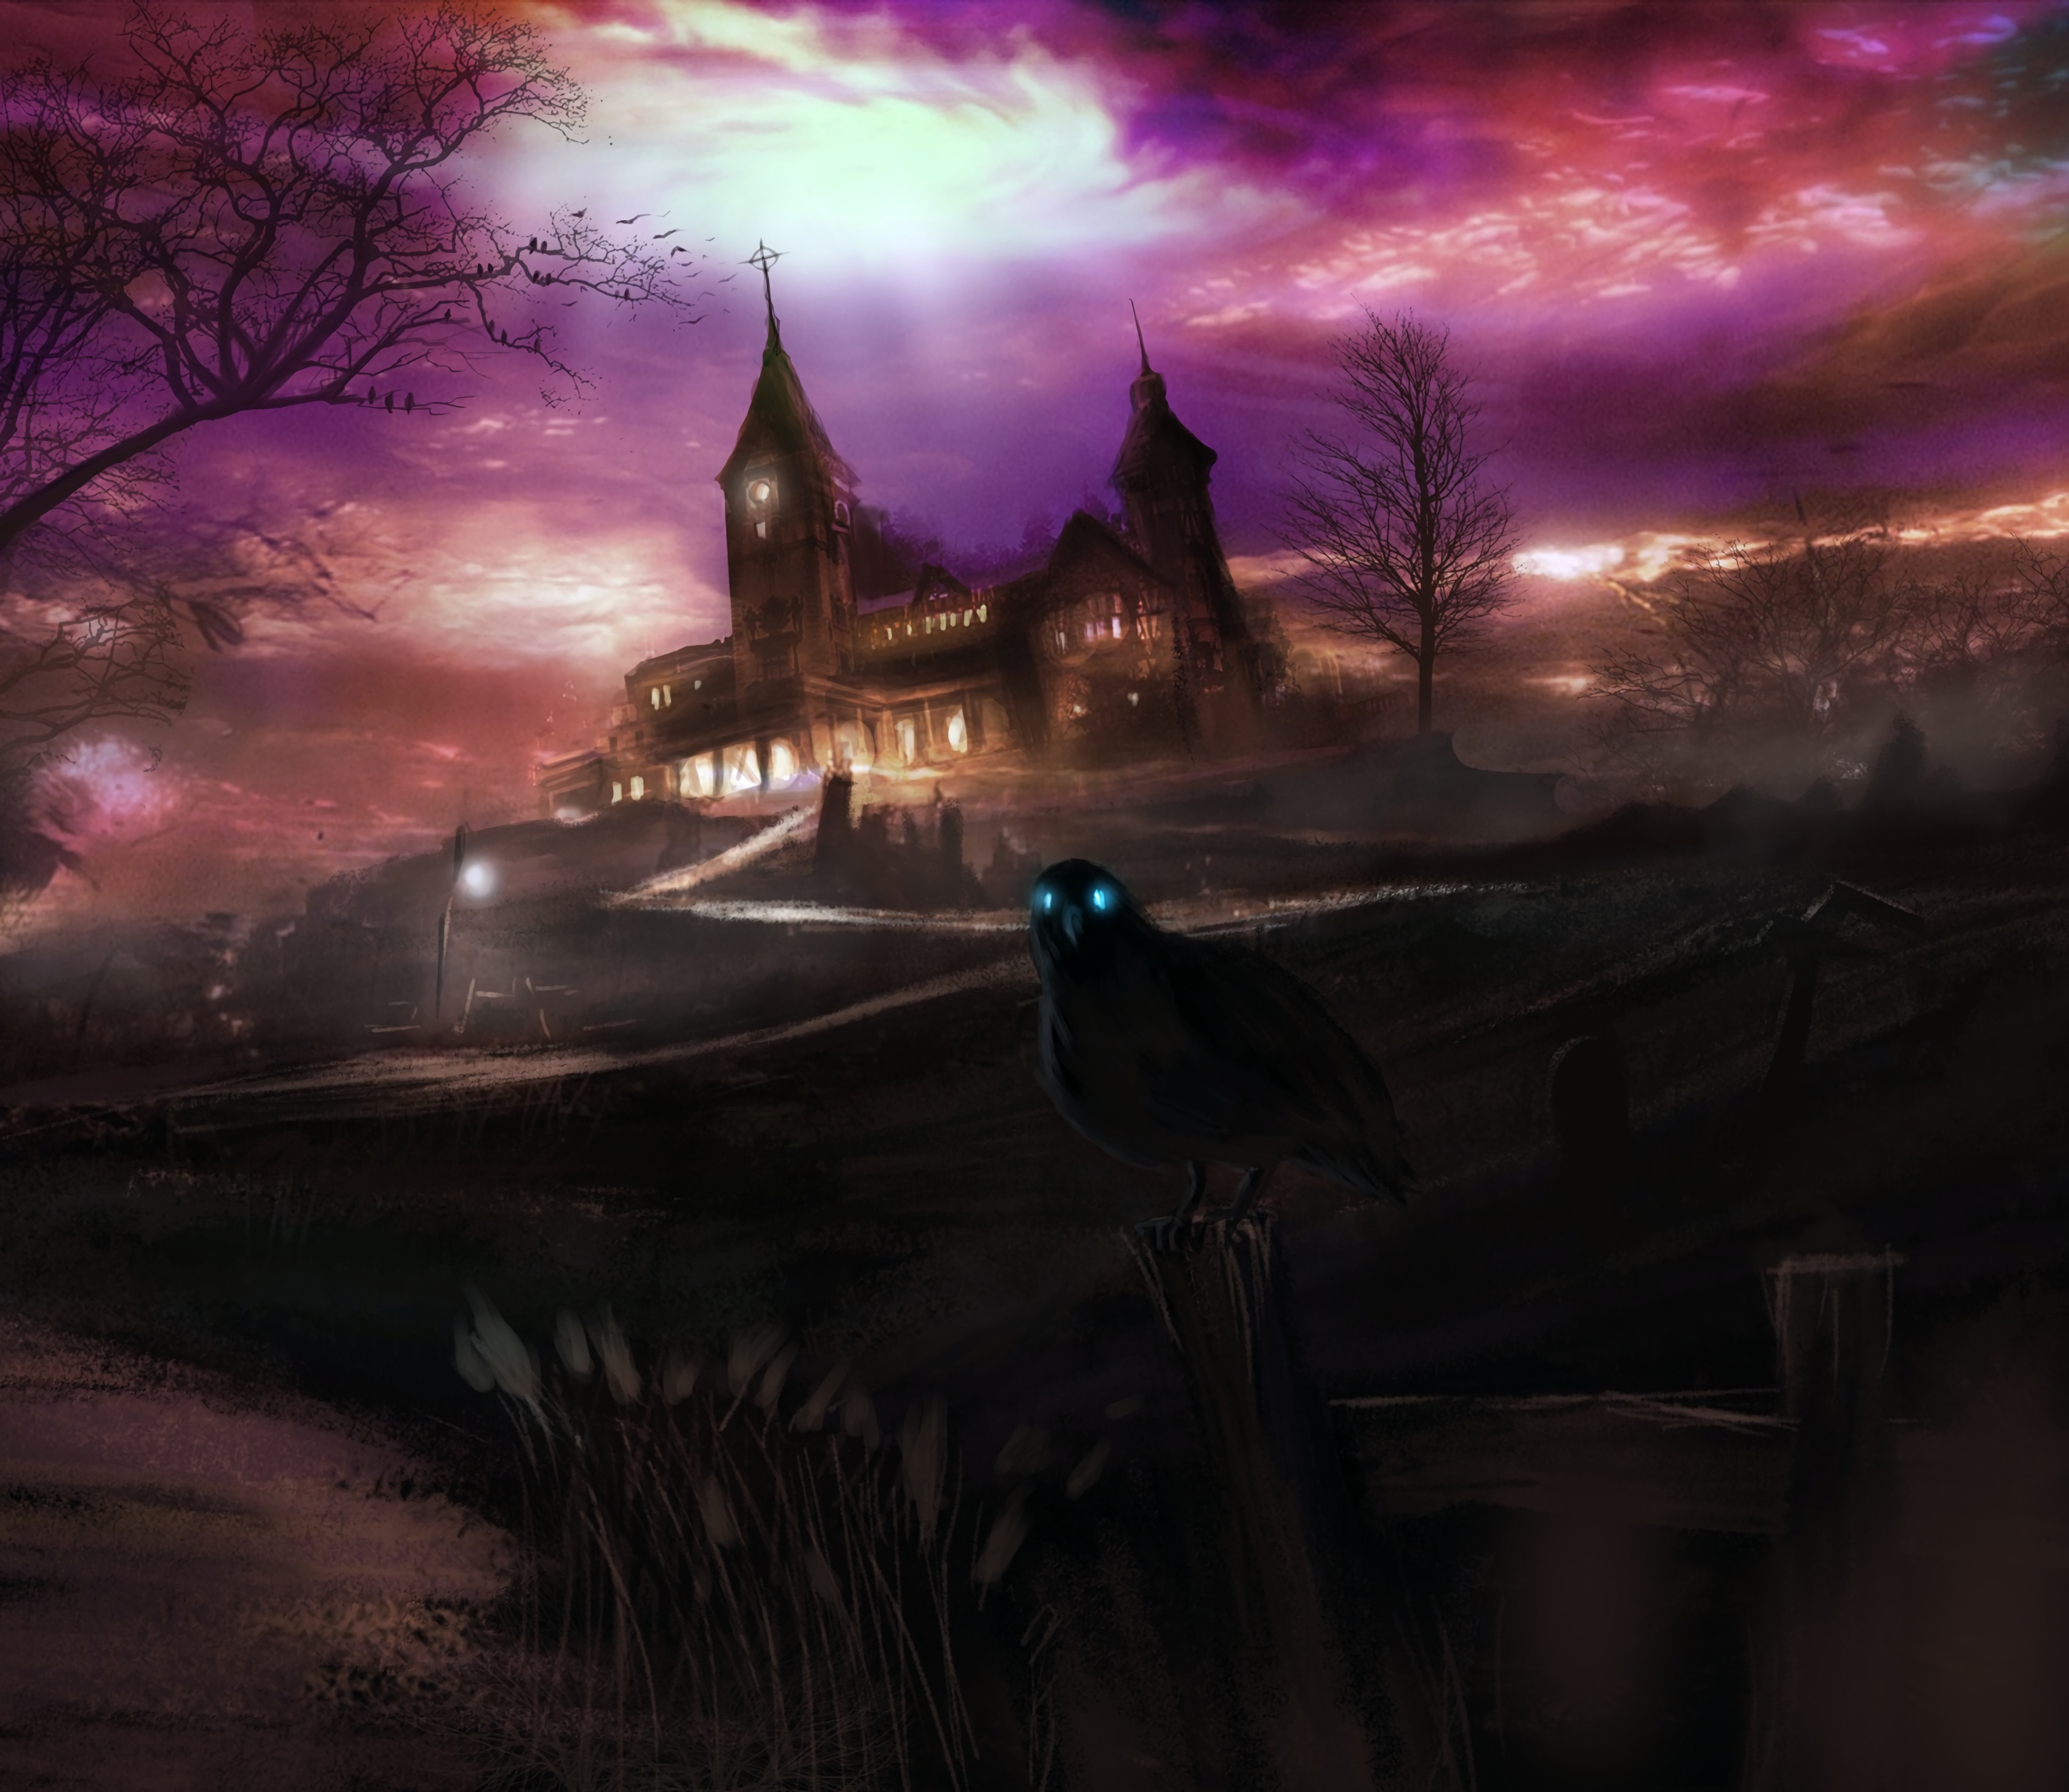 art, dark, house, hill, raven, spooky, eerie